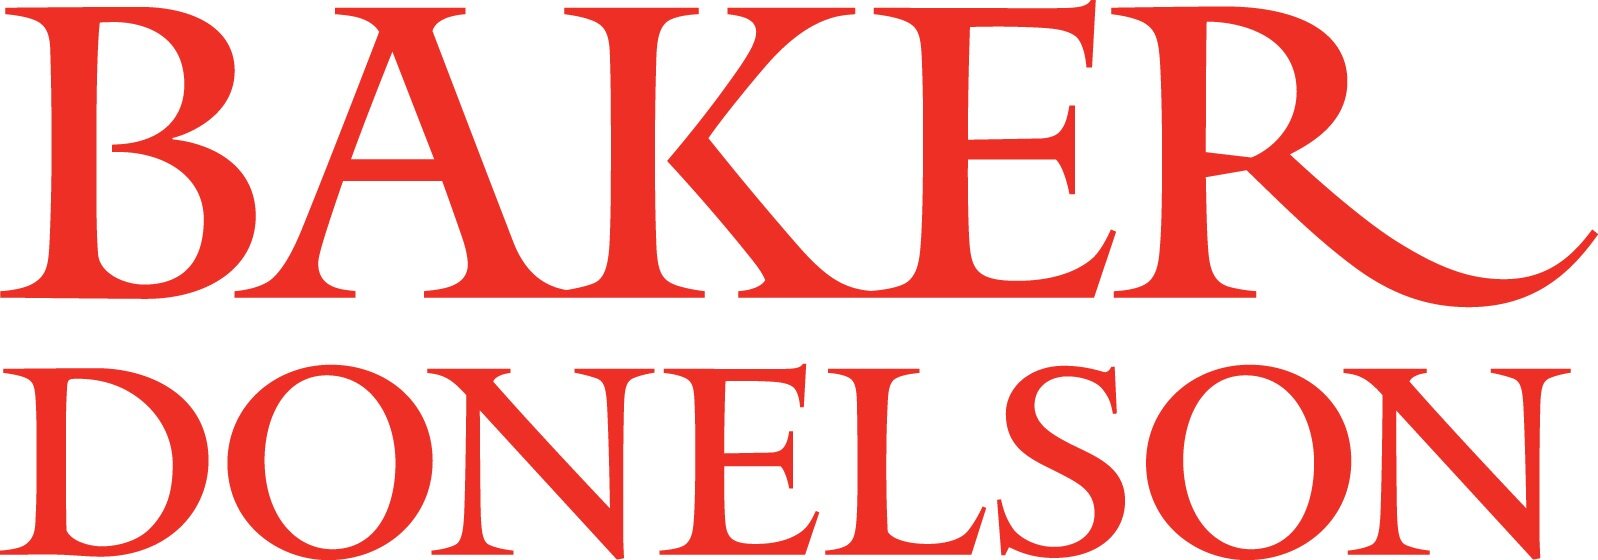 Baker Donelson Stacked logo.jpg